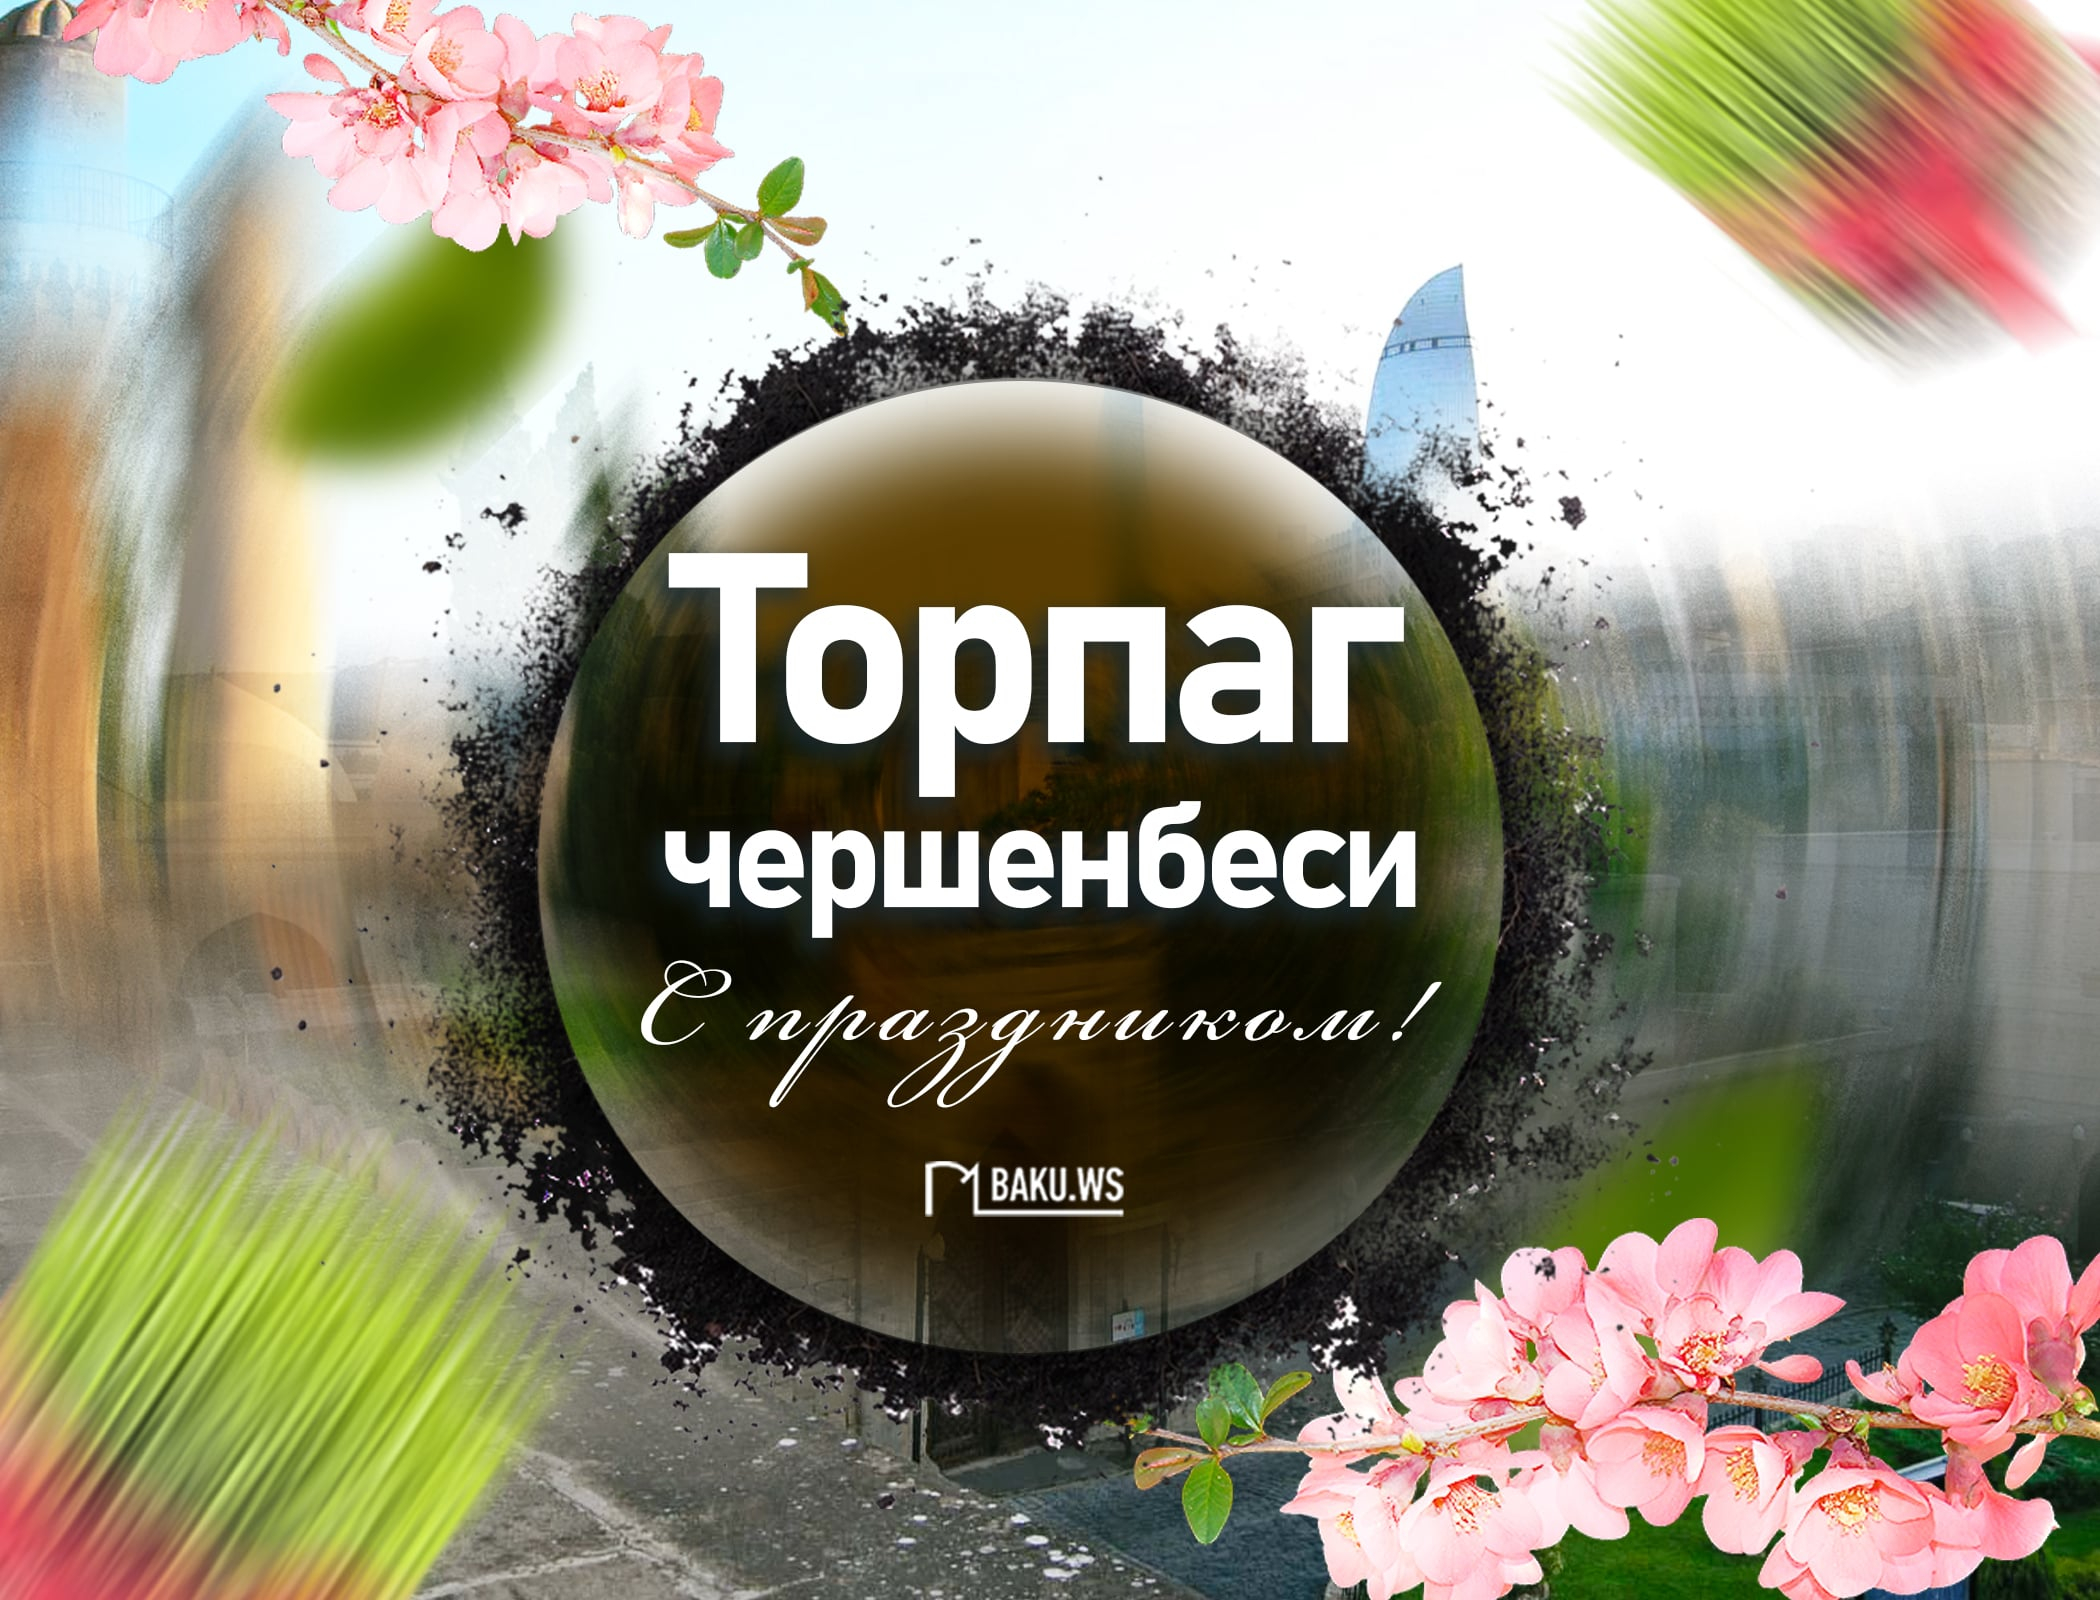 Сегодня в Азербайджане отмечают Торпаг чершенбеси